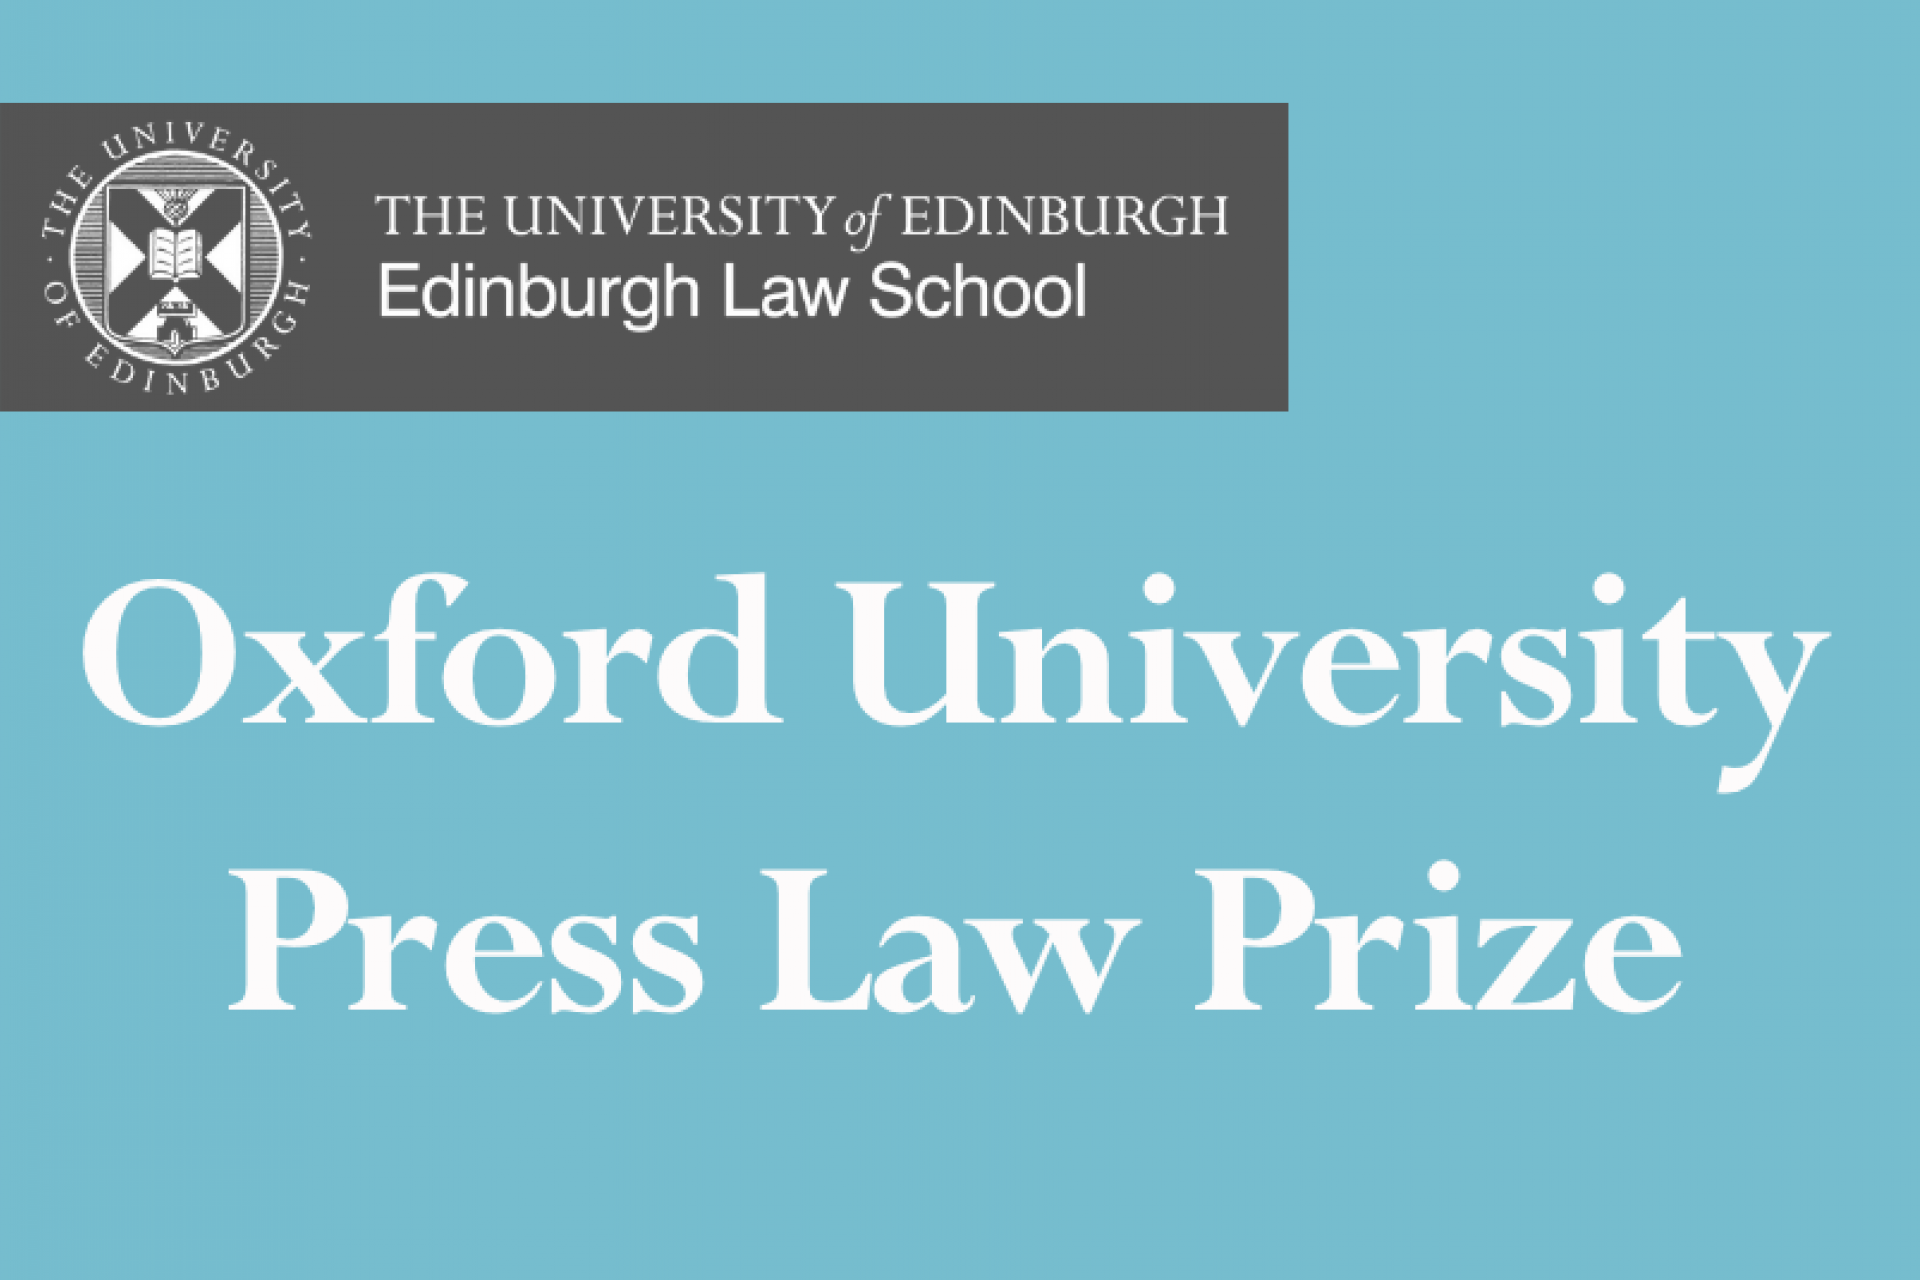 Oxford University Press Law Prize